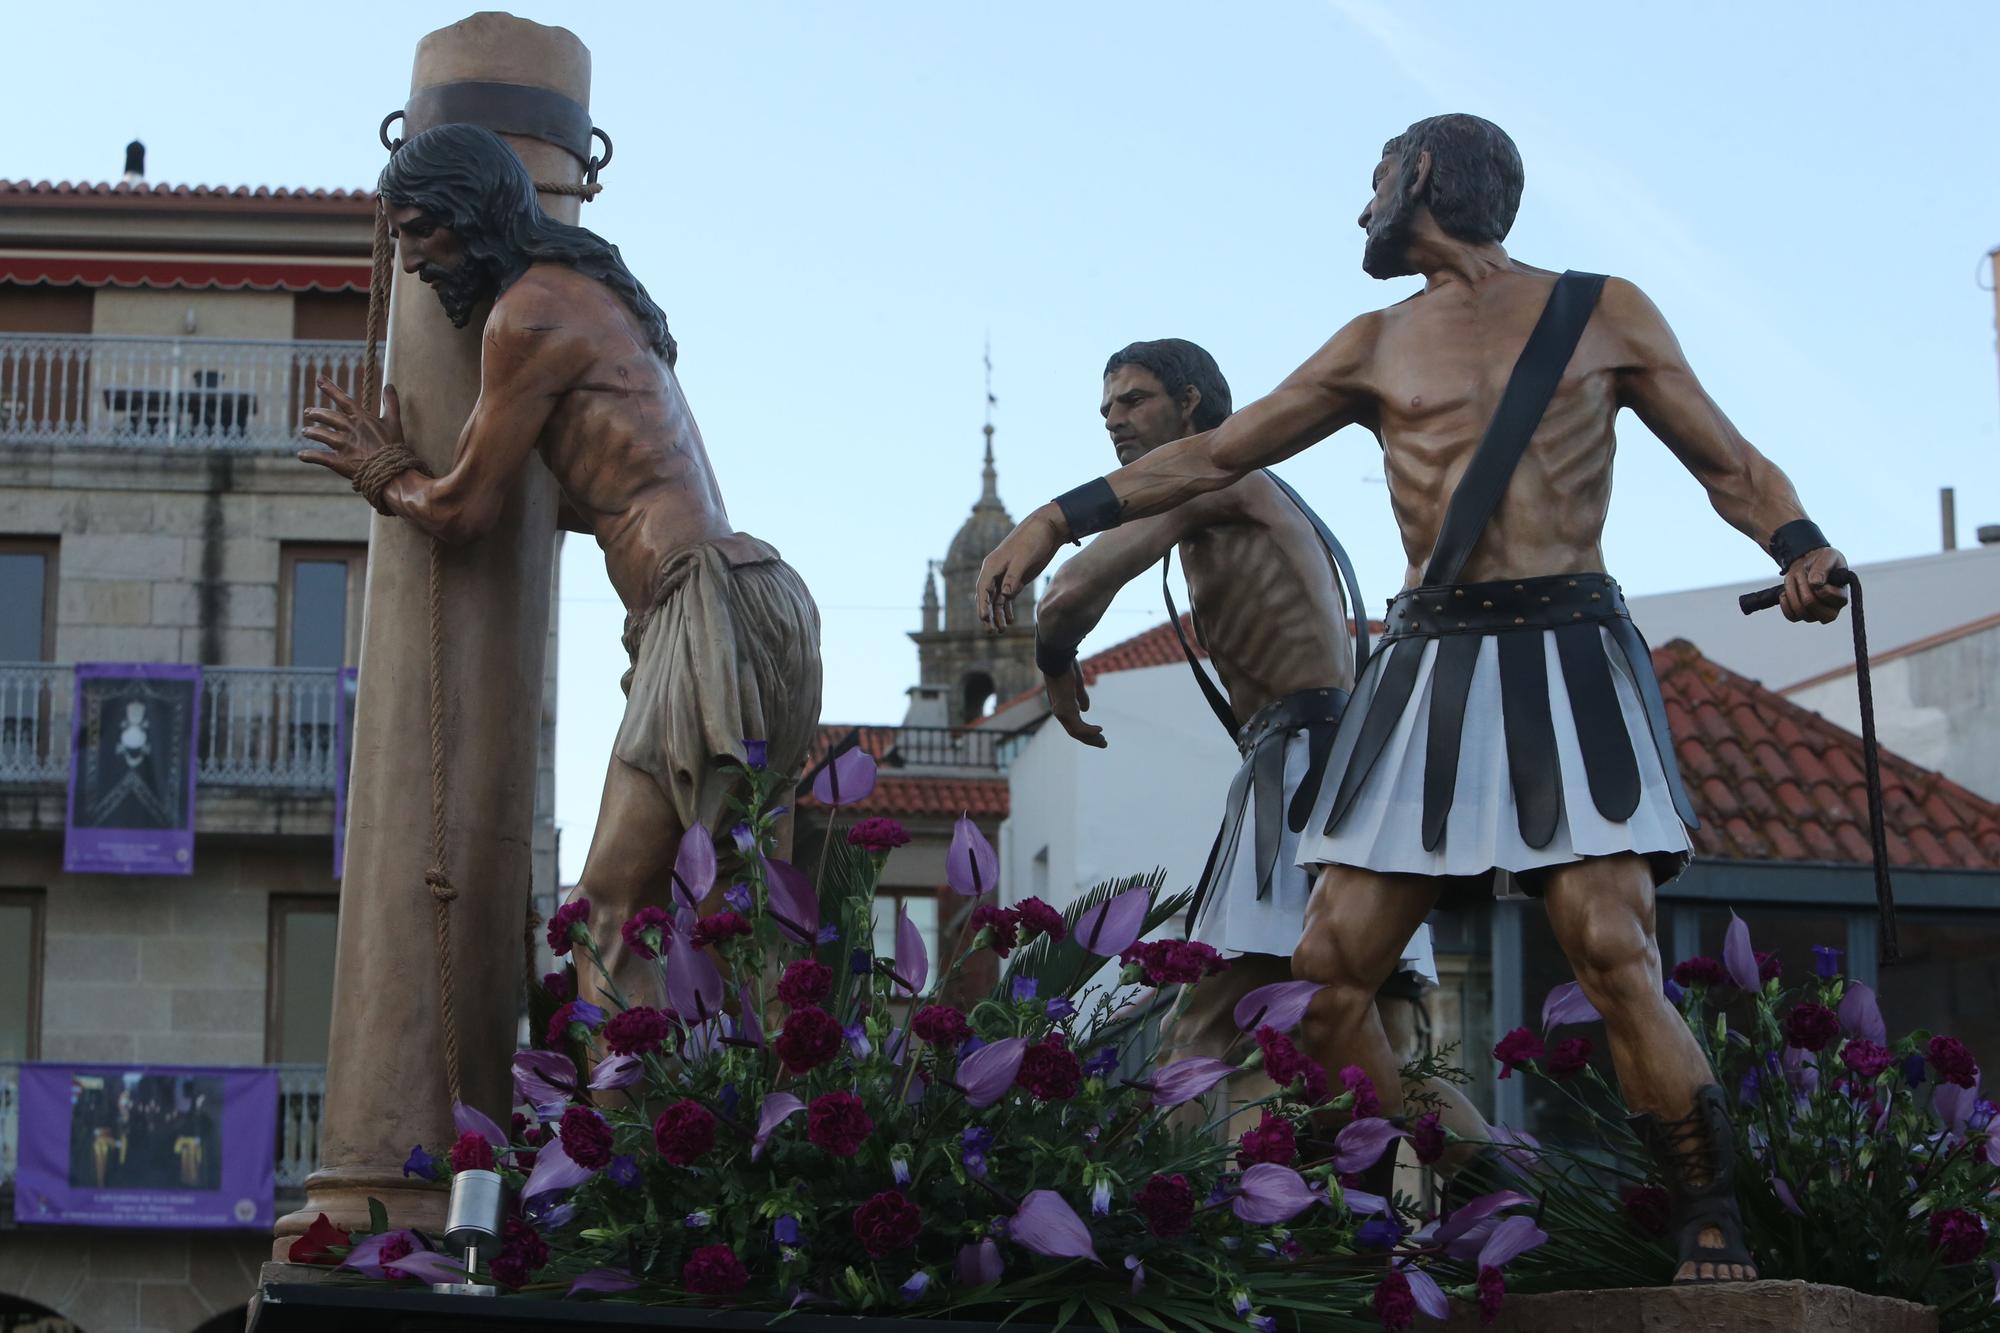 La procesión de Jueves Santo de Cangas estrena escenificación en la alameda